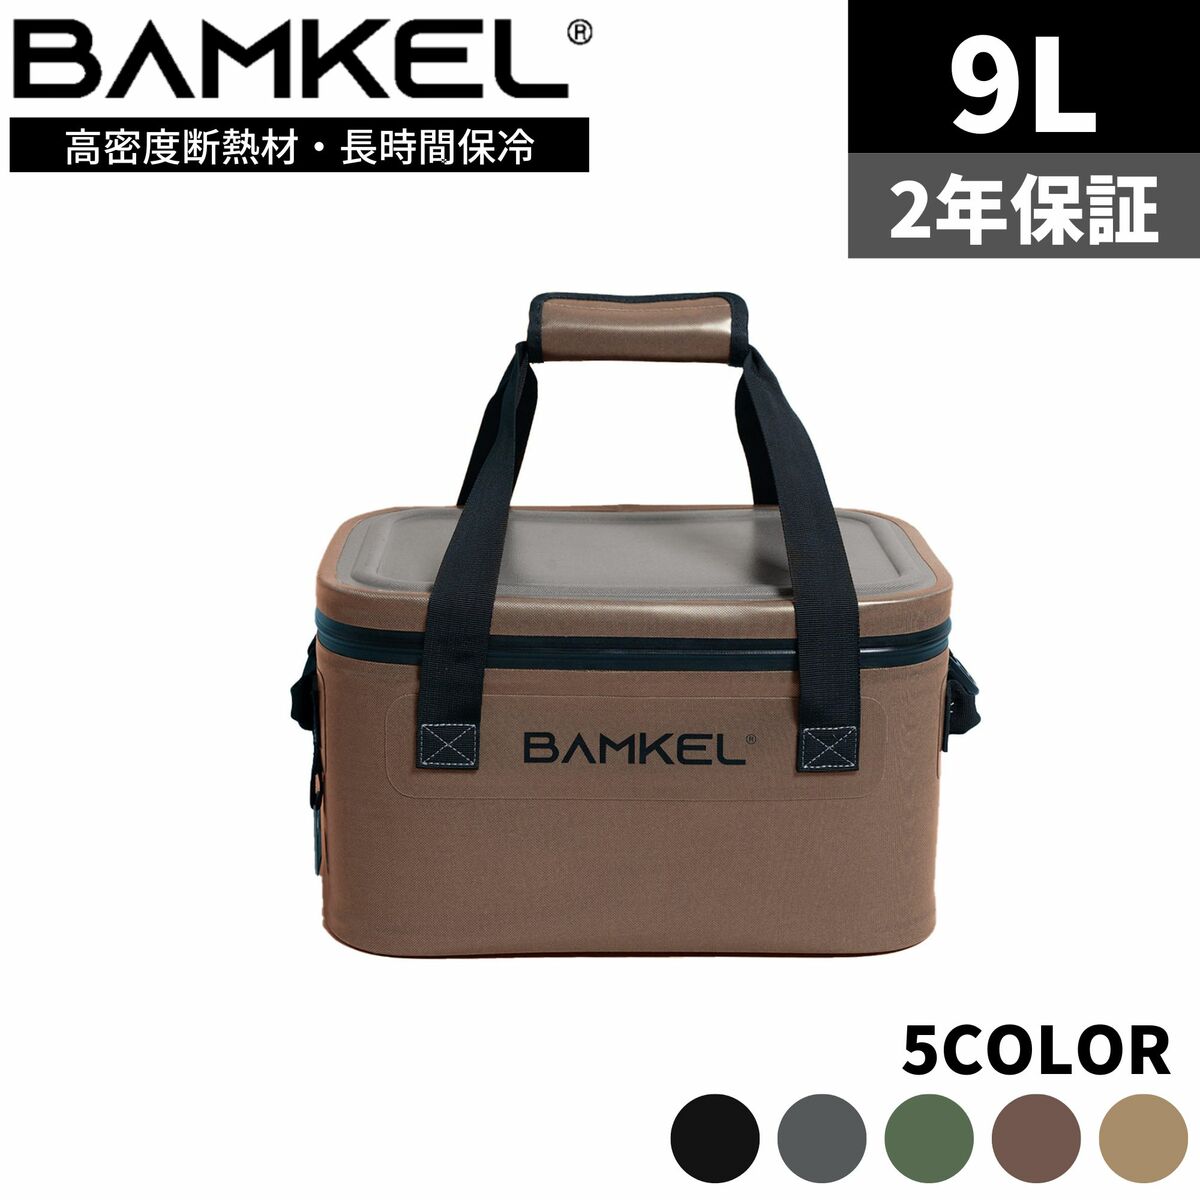 【楽天市場】BAMKEL(バンケル) ソフトクーラーボックス 9L 長時間 保冷 選べるカラー サイズ 高耐久 アウトドア キャンプ 韓国